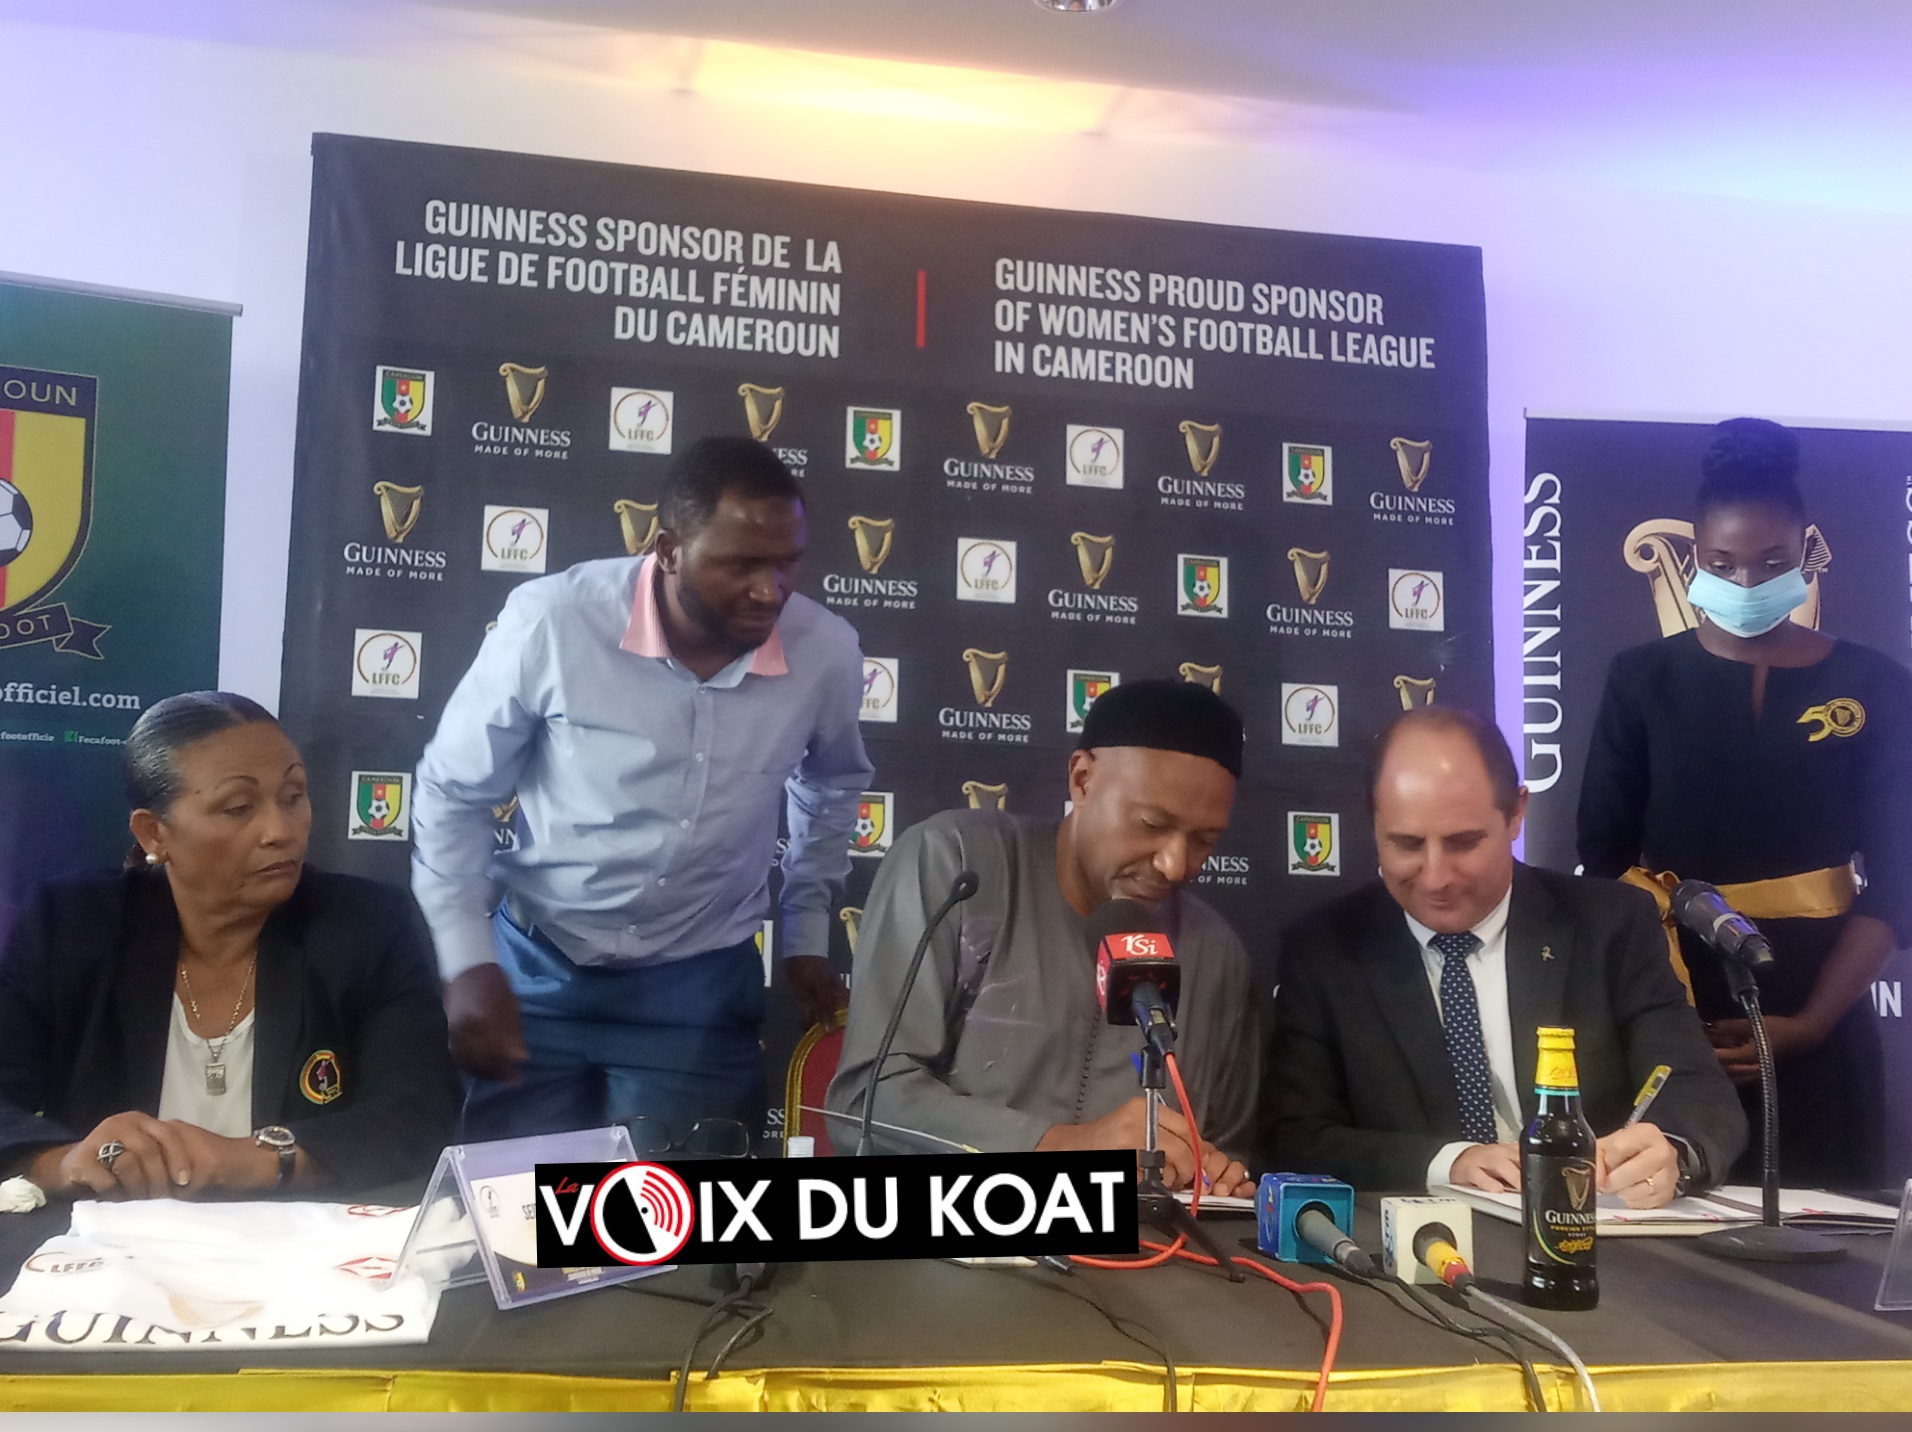 Le partenariat qui a été entériné entre la Fédération camerounaise de football et Guinness Cameroun ouvre une nouvelle page dans le sponsoring du football féminin.